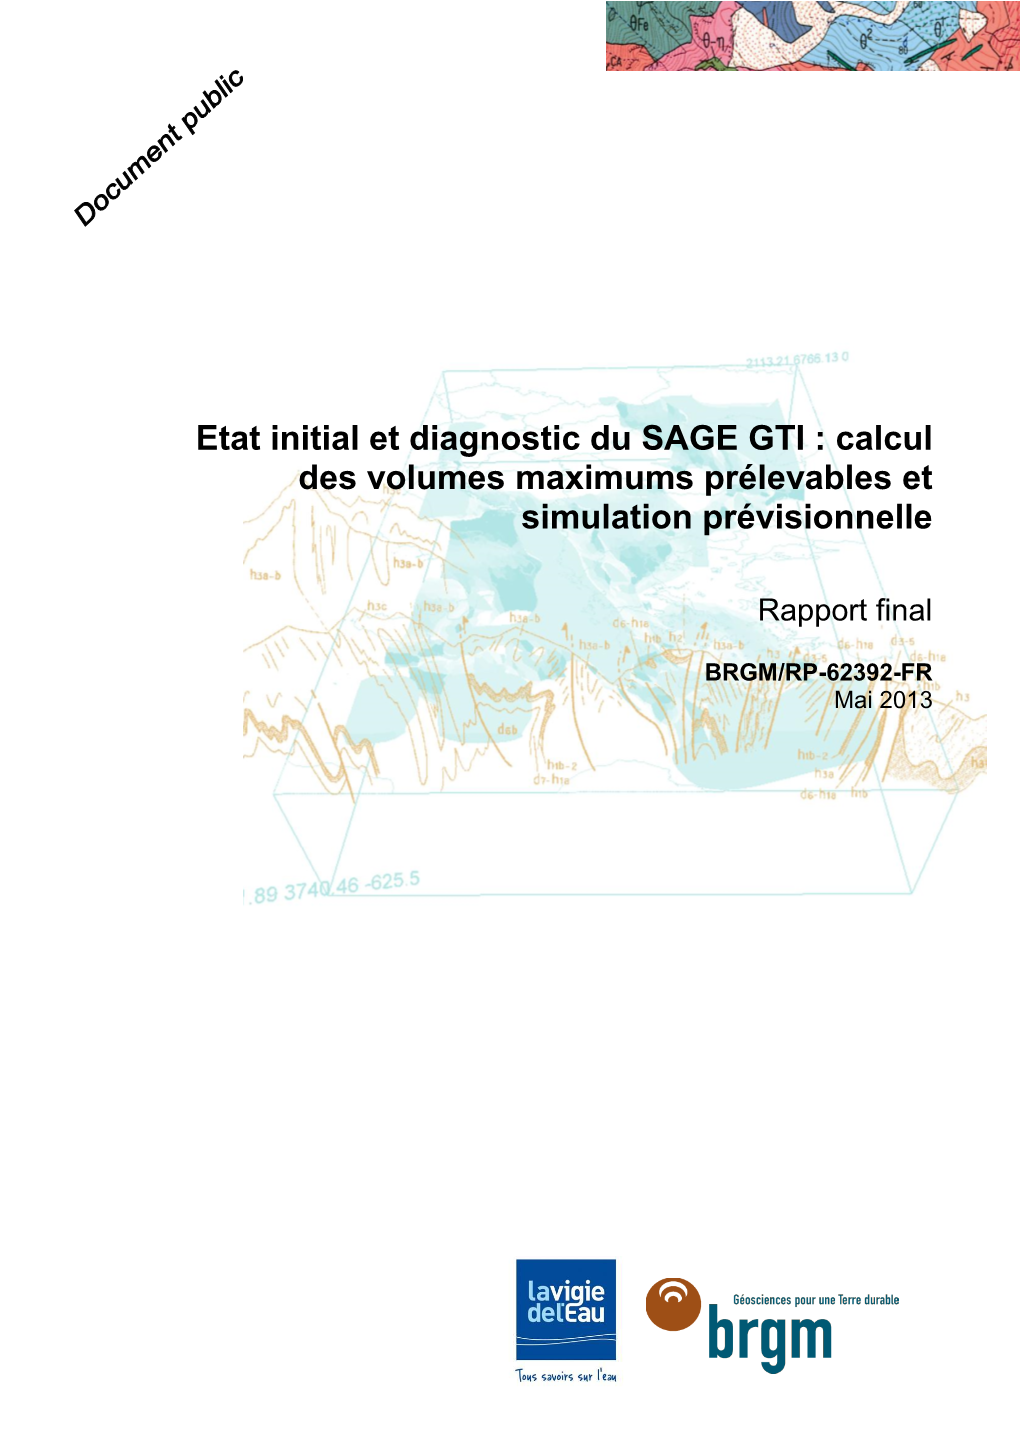 Etat Initial Et Diagnostic Du SAGE GTI : Calcul Des Volumes Maximums Prélevables Et Simulation Prévisionnelle